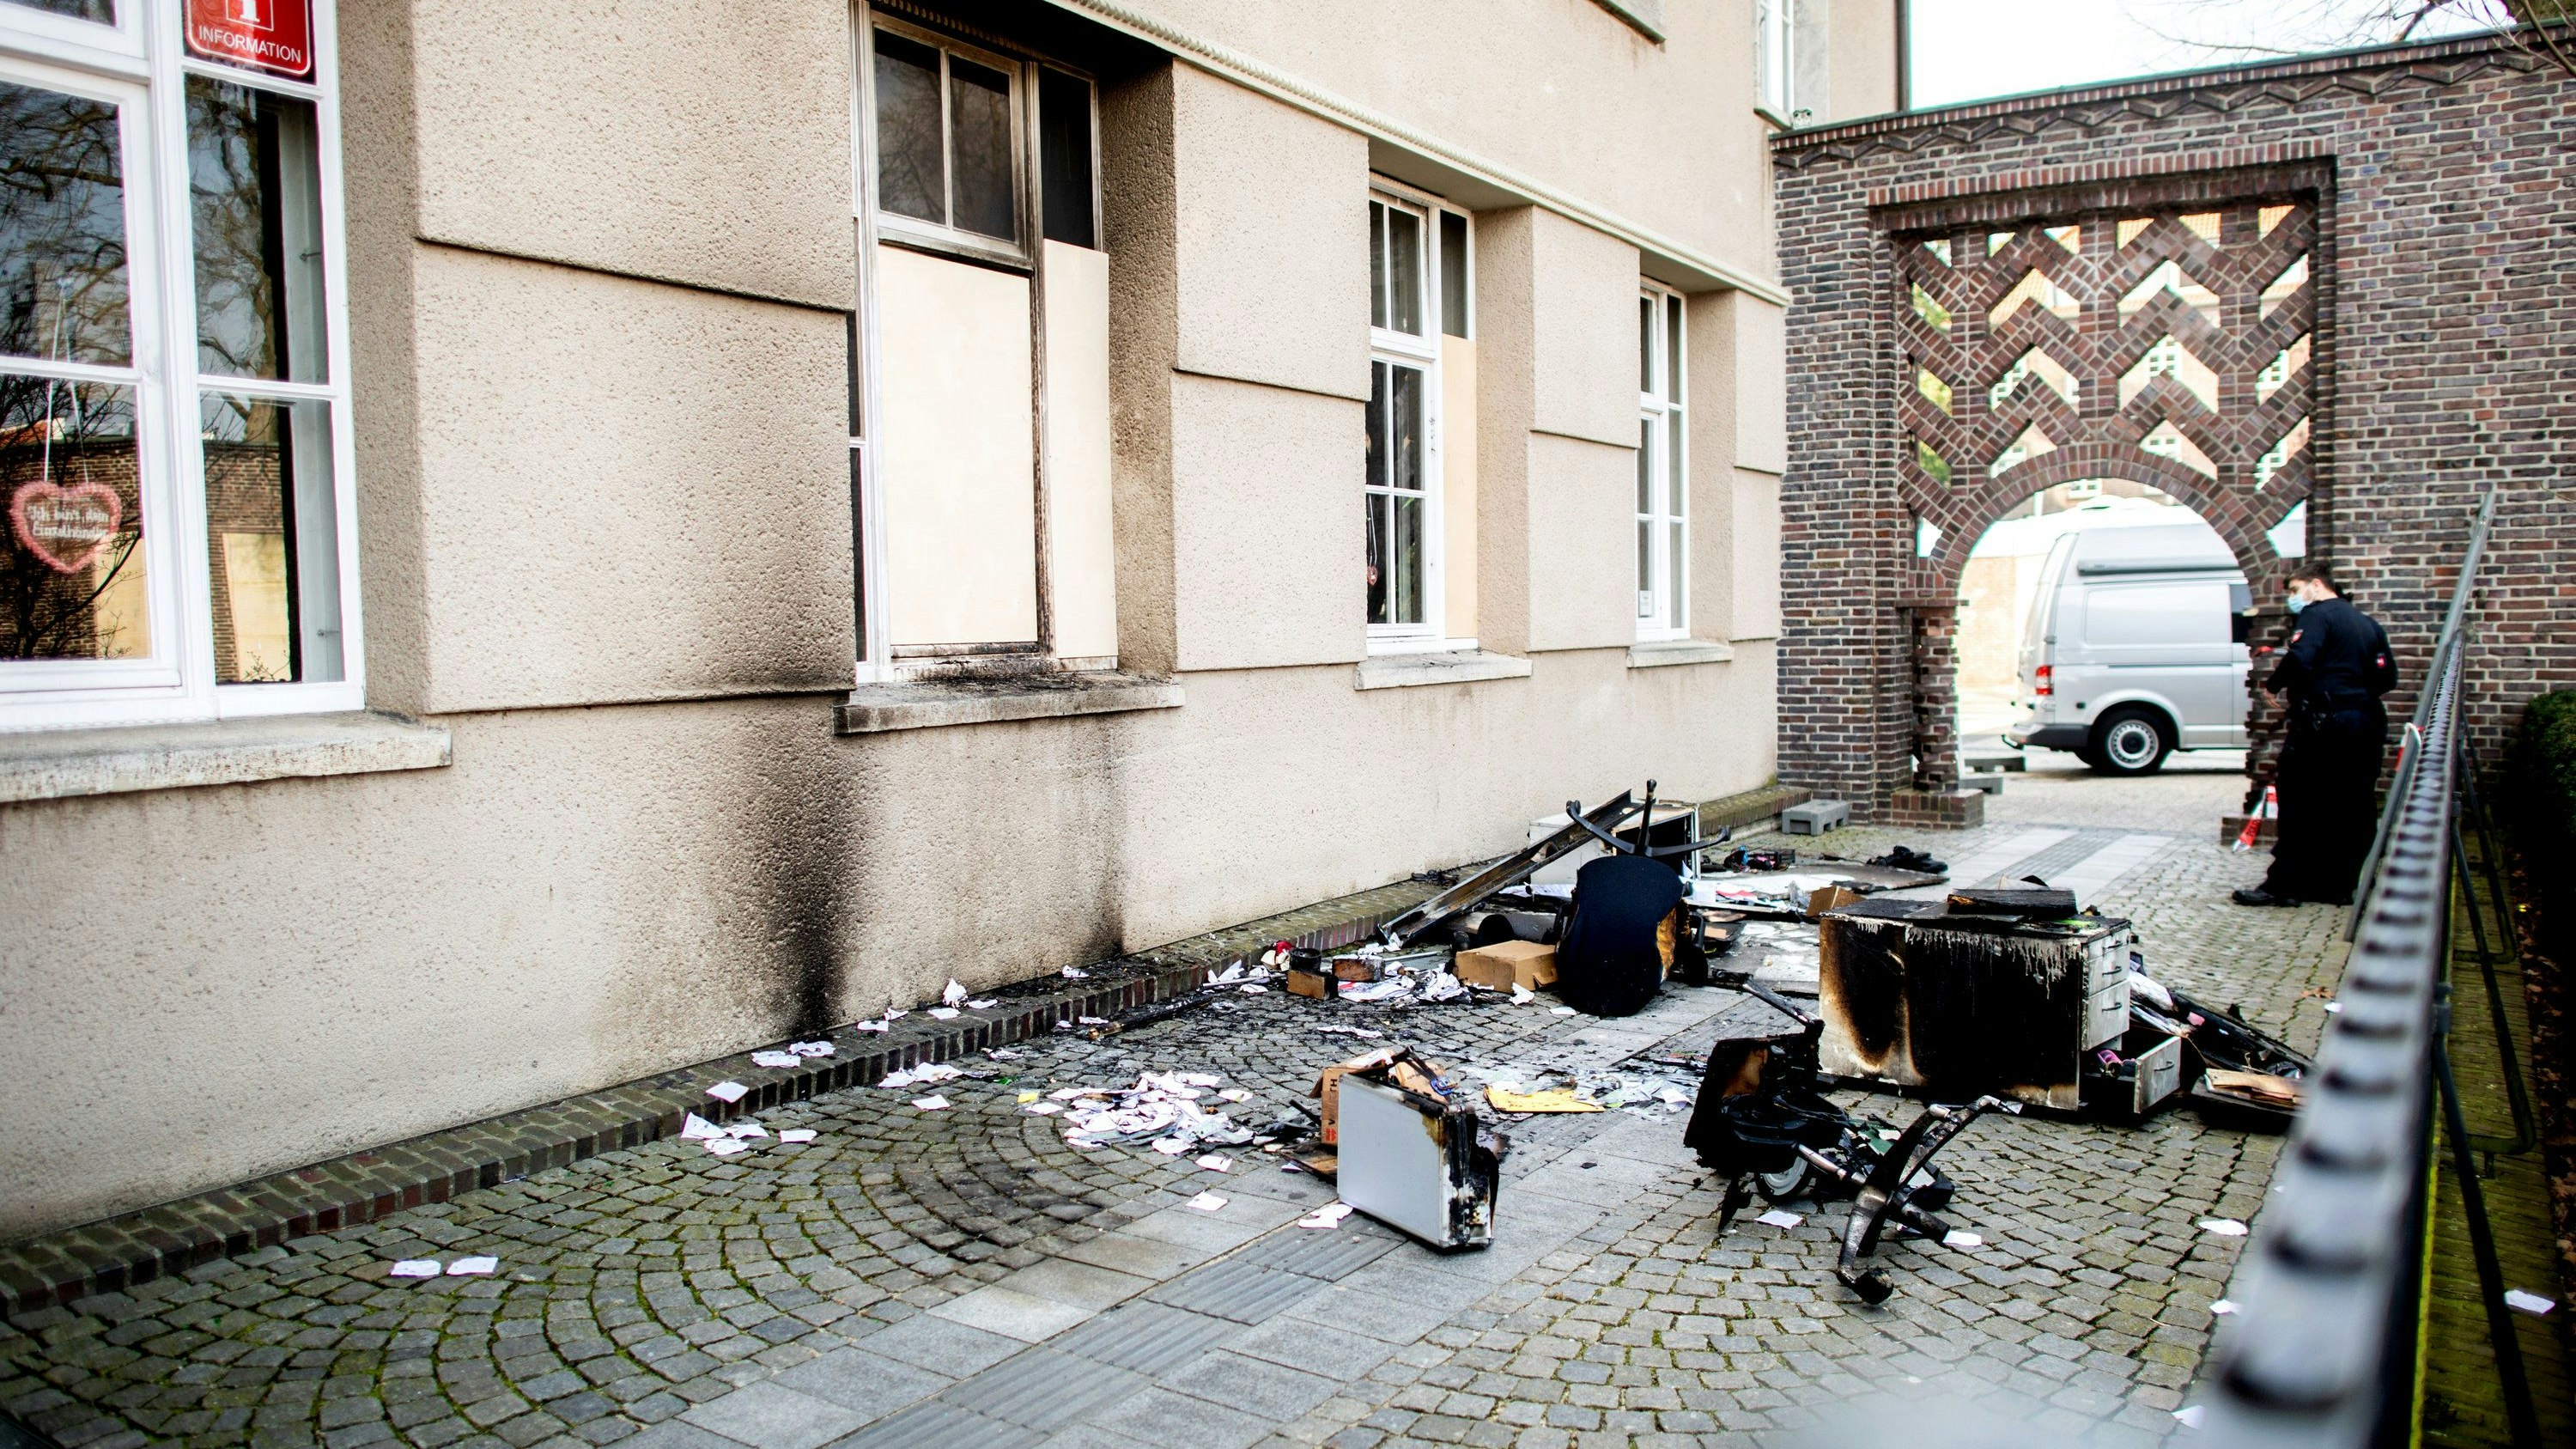 Verzweiflungstat: Aus Frustration verübte ein 31-Jähriger einen Brandanschlag auf das Delmenhorster Rathaus. Archivfoto: dpa